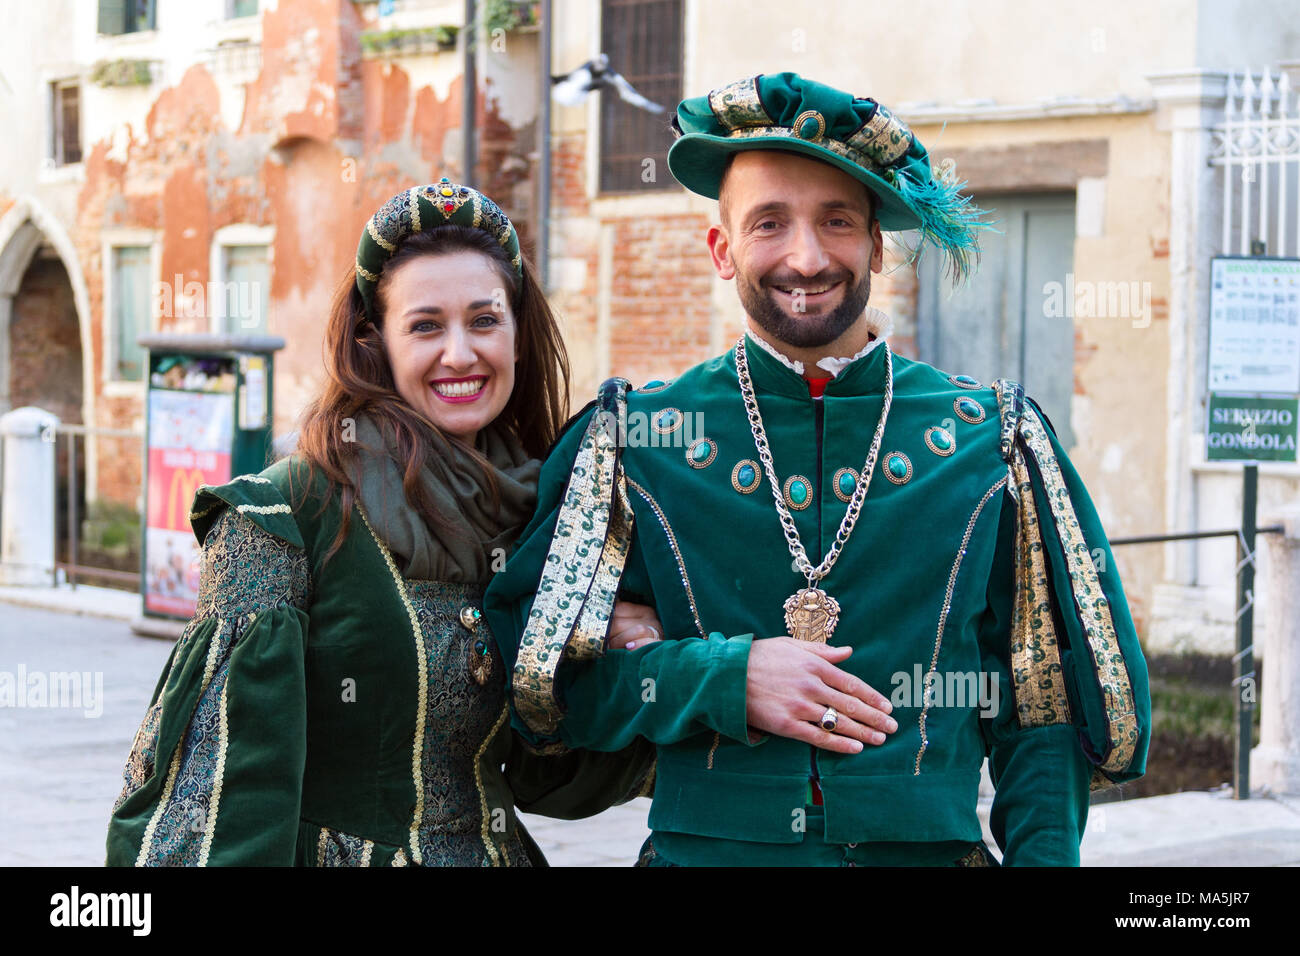 Venezia (Venise), Italie. 2 février 2018. Un couple en habits royaux sur Carnaval de Venise. Banque D'Images